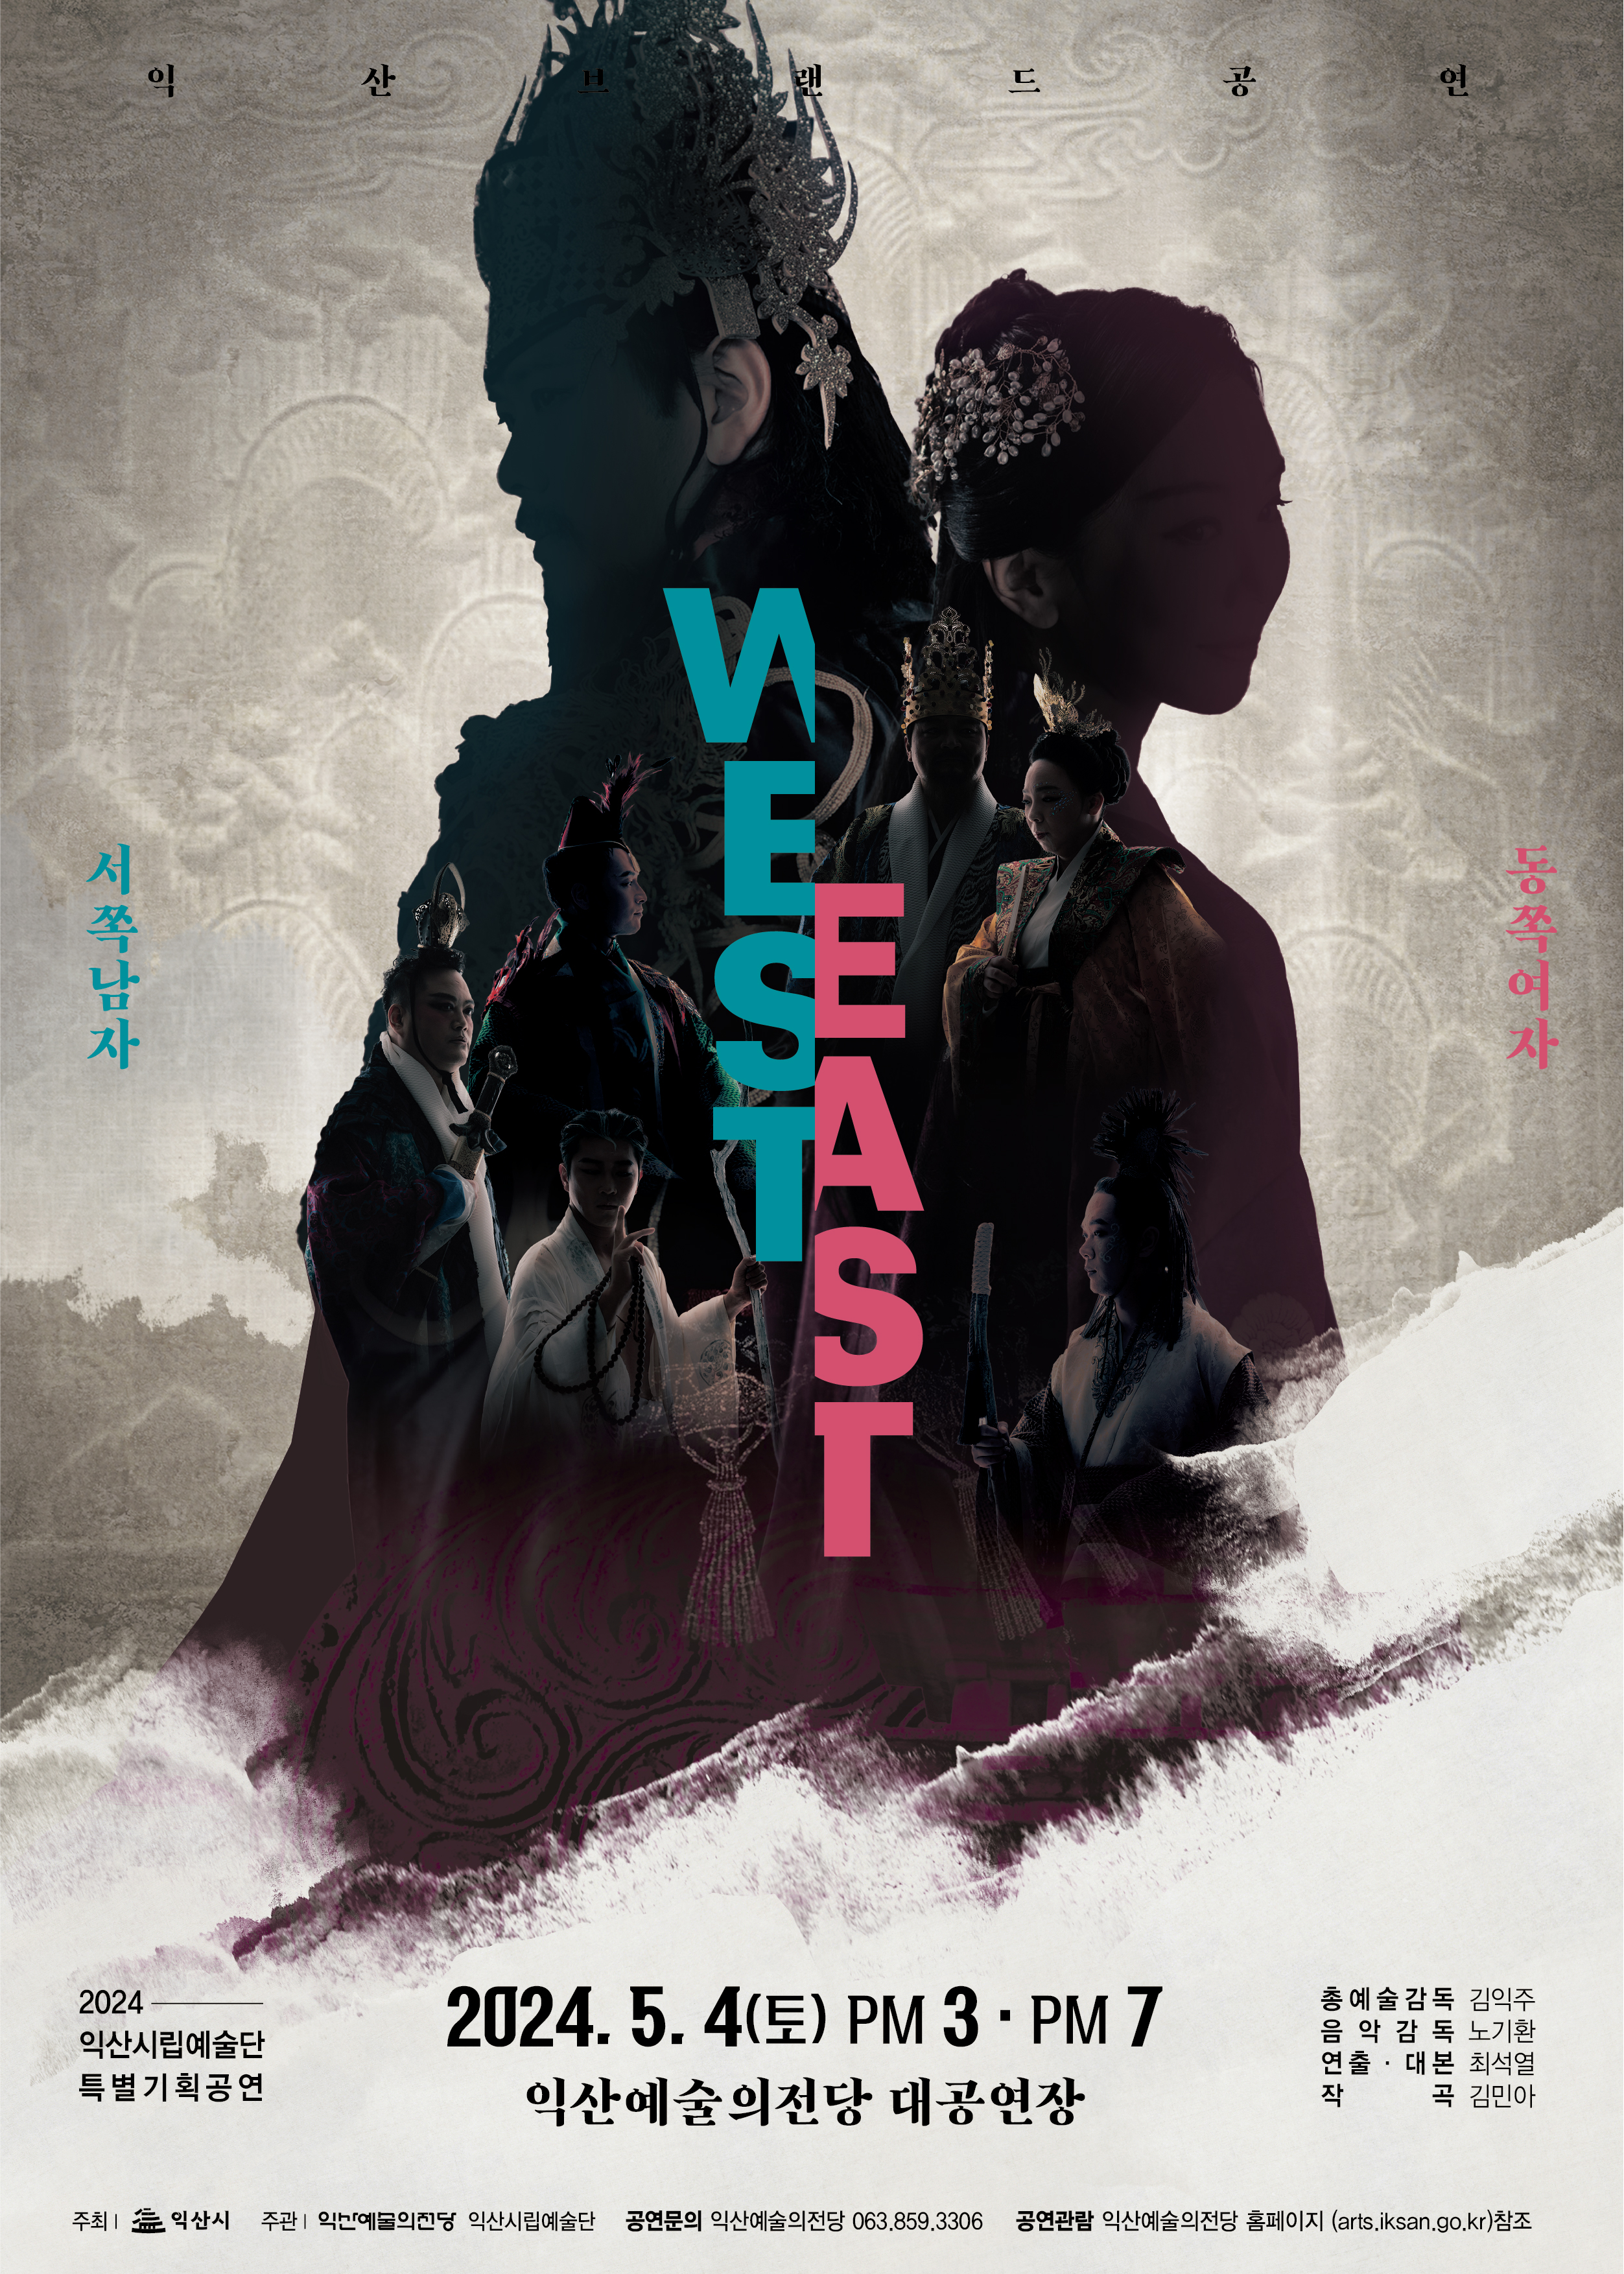  2024 익산 브랜드 공연 WEST & EAST(서쪽남자 & 동쪽여자)